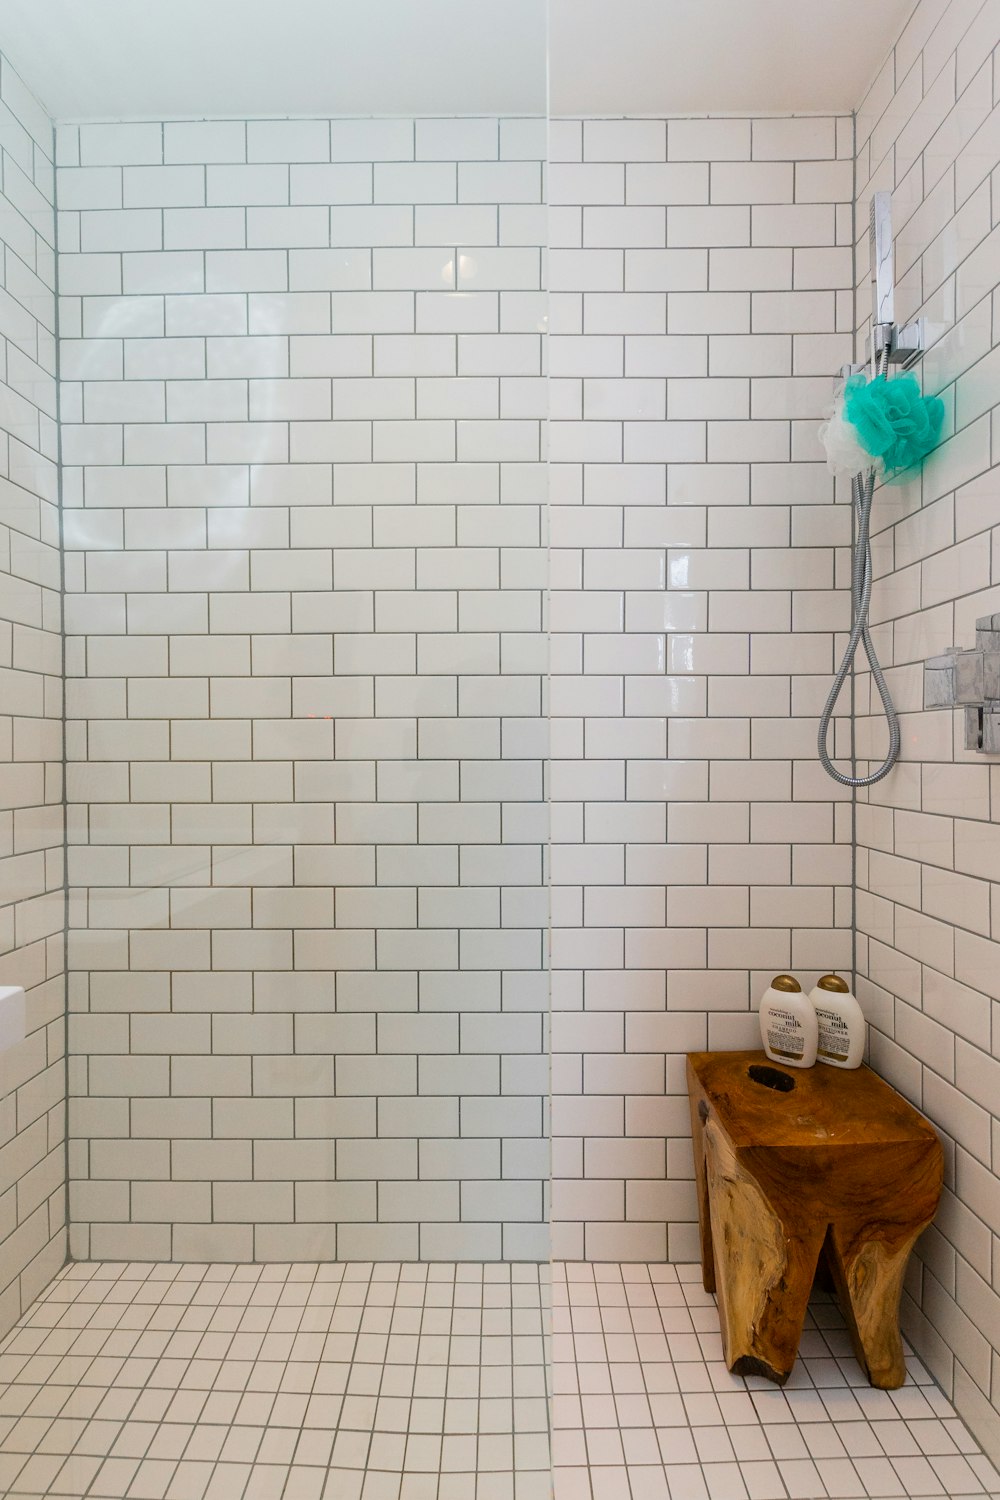 Bathroom Tile Pictures | Download Free Images on Unsplash